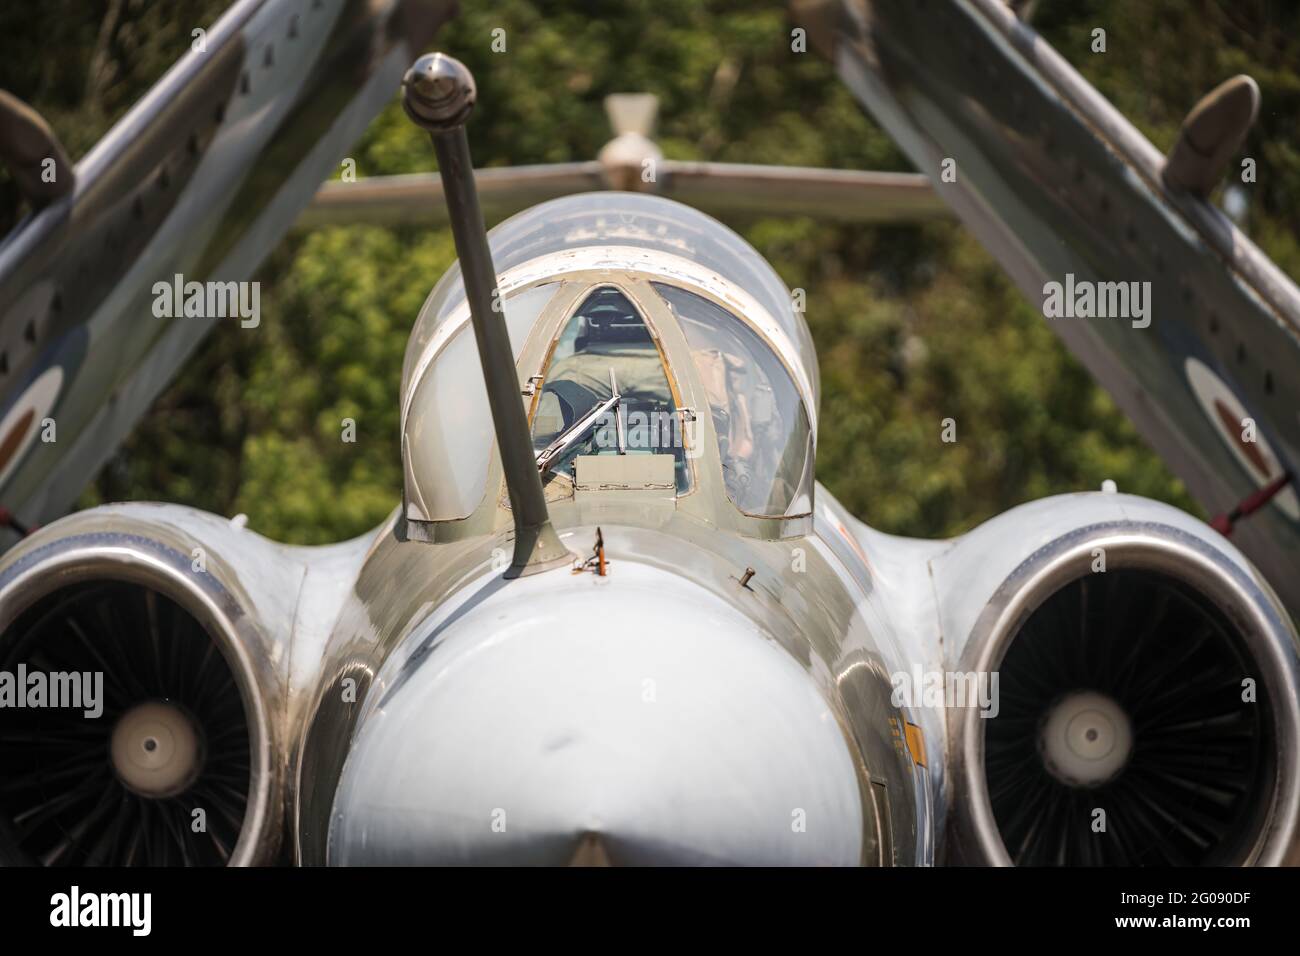 Abbandonato il vecchio jet da combattimento Buccaneer RAF dall'era della guerra fredda. Ali pieghevoli per l'uso su portaerei Focus posto di pilotaggio cockpit piloti con motori a getto Foto Stock